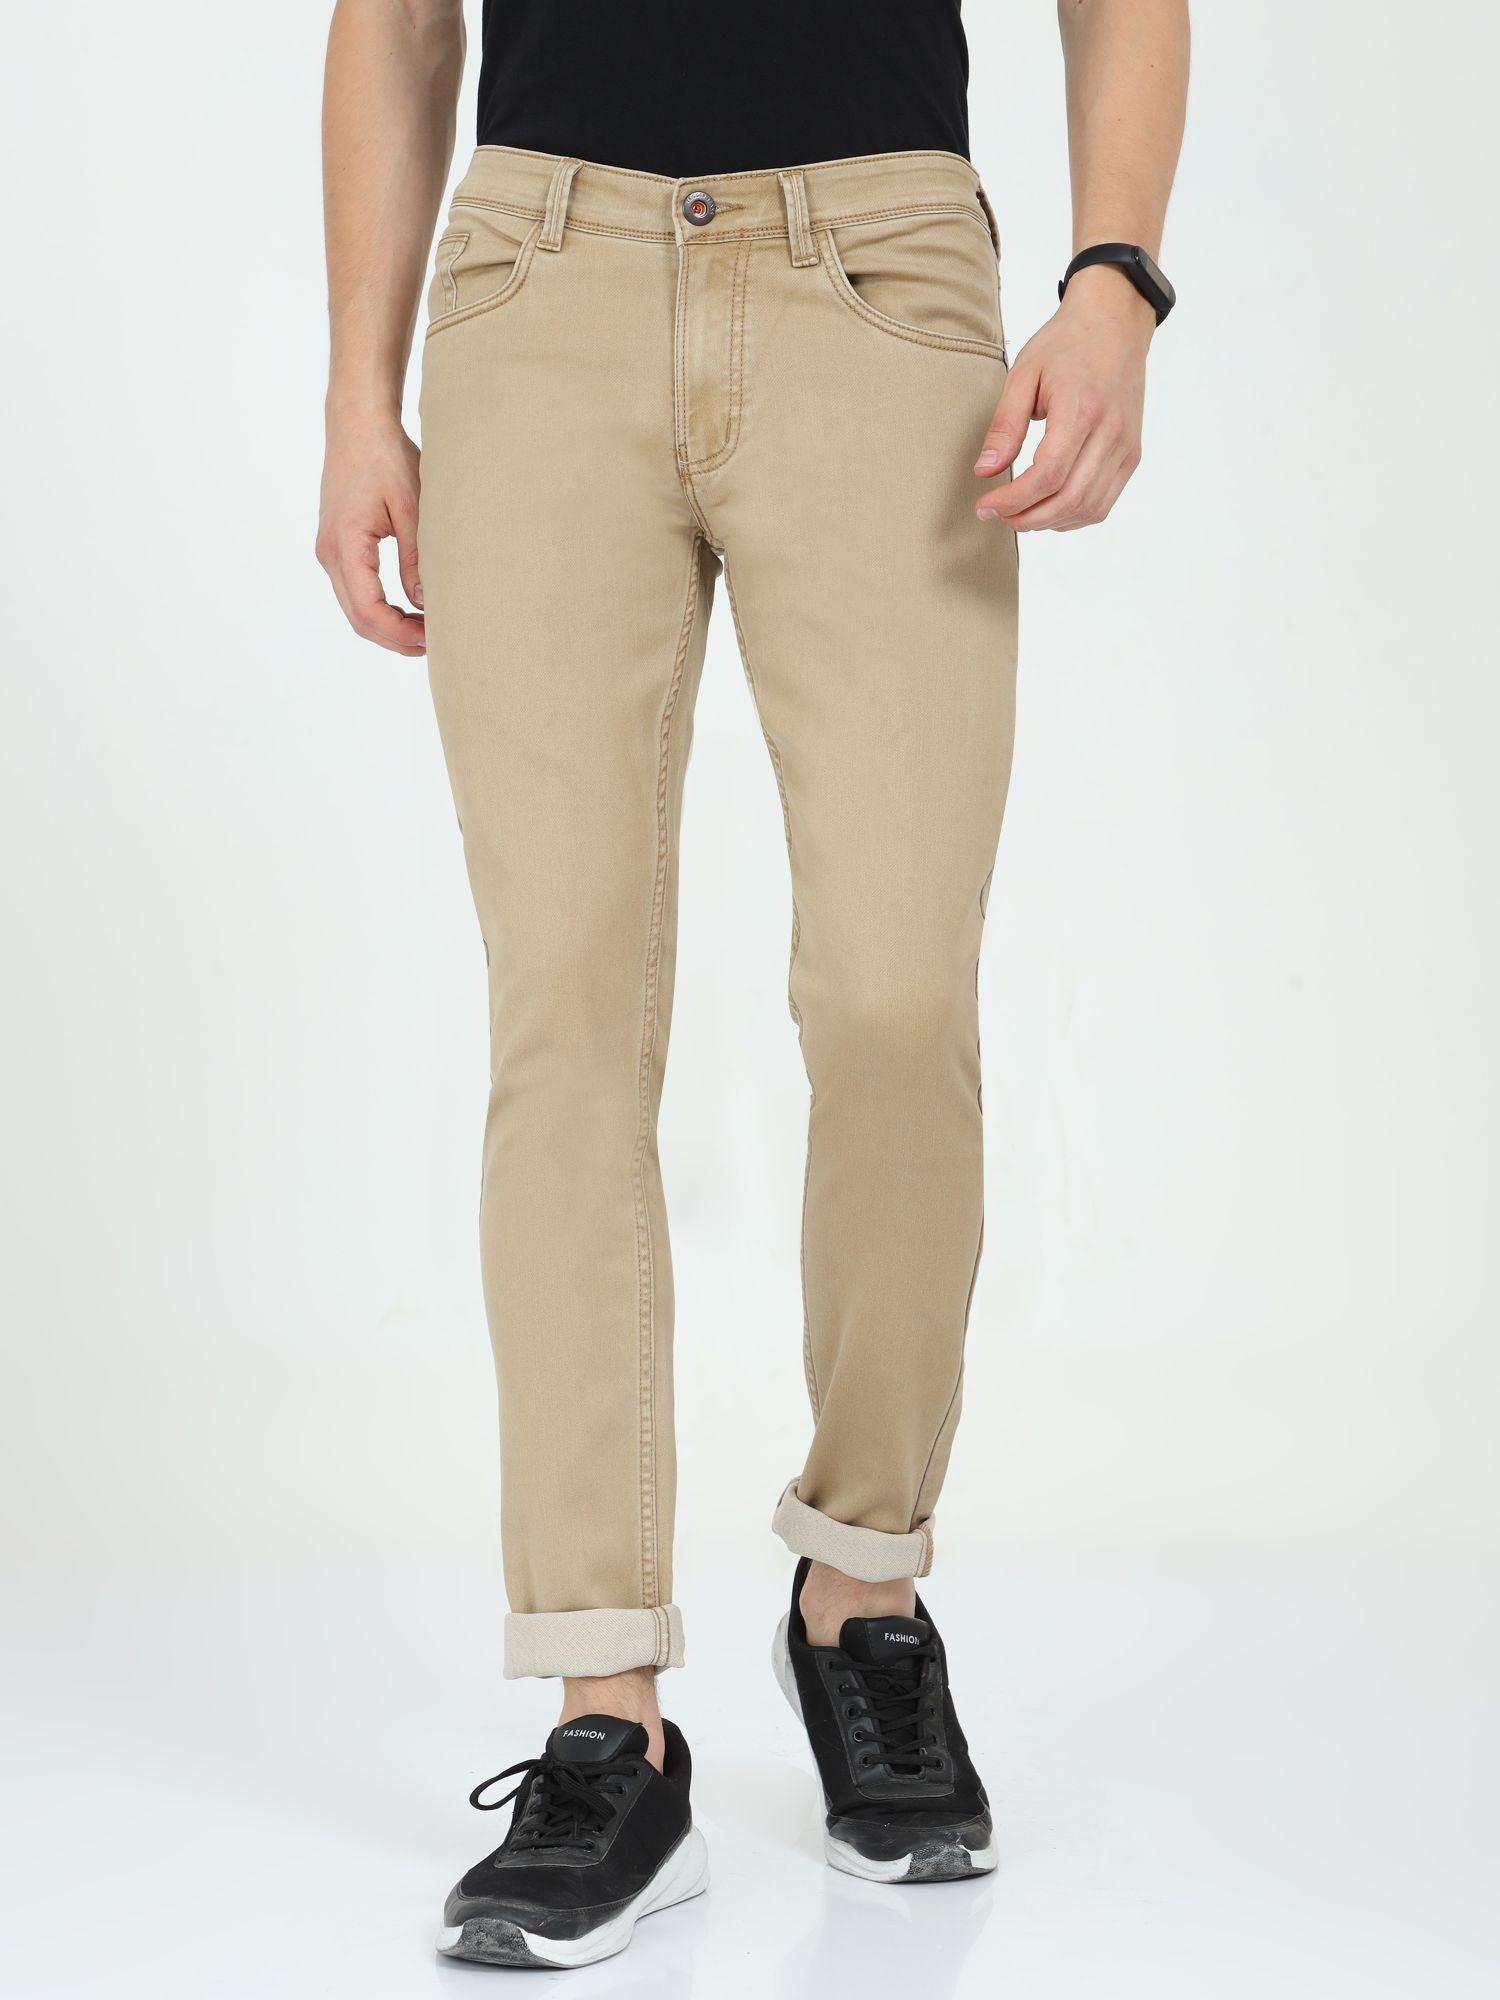 Men's Slim Fit Jeans - Light Khaki